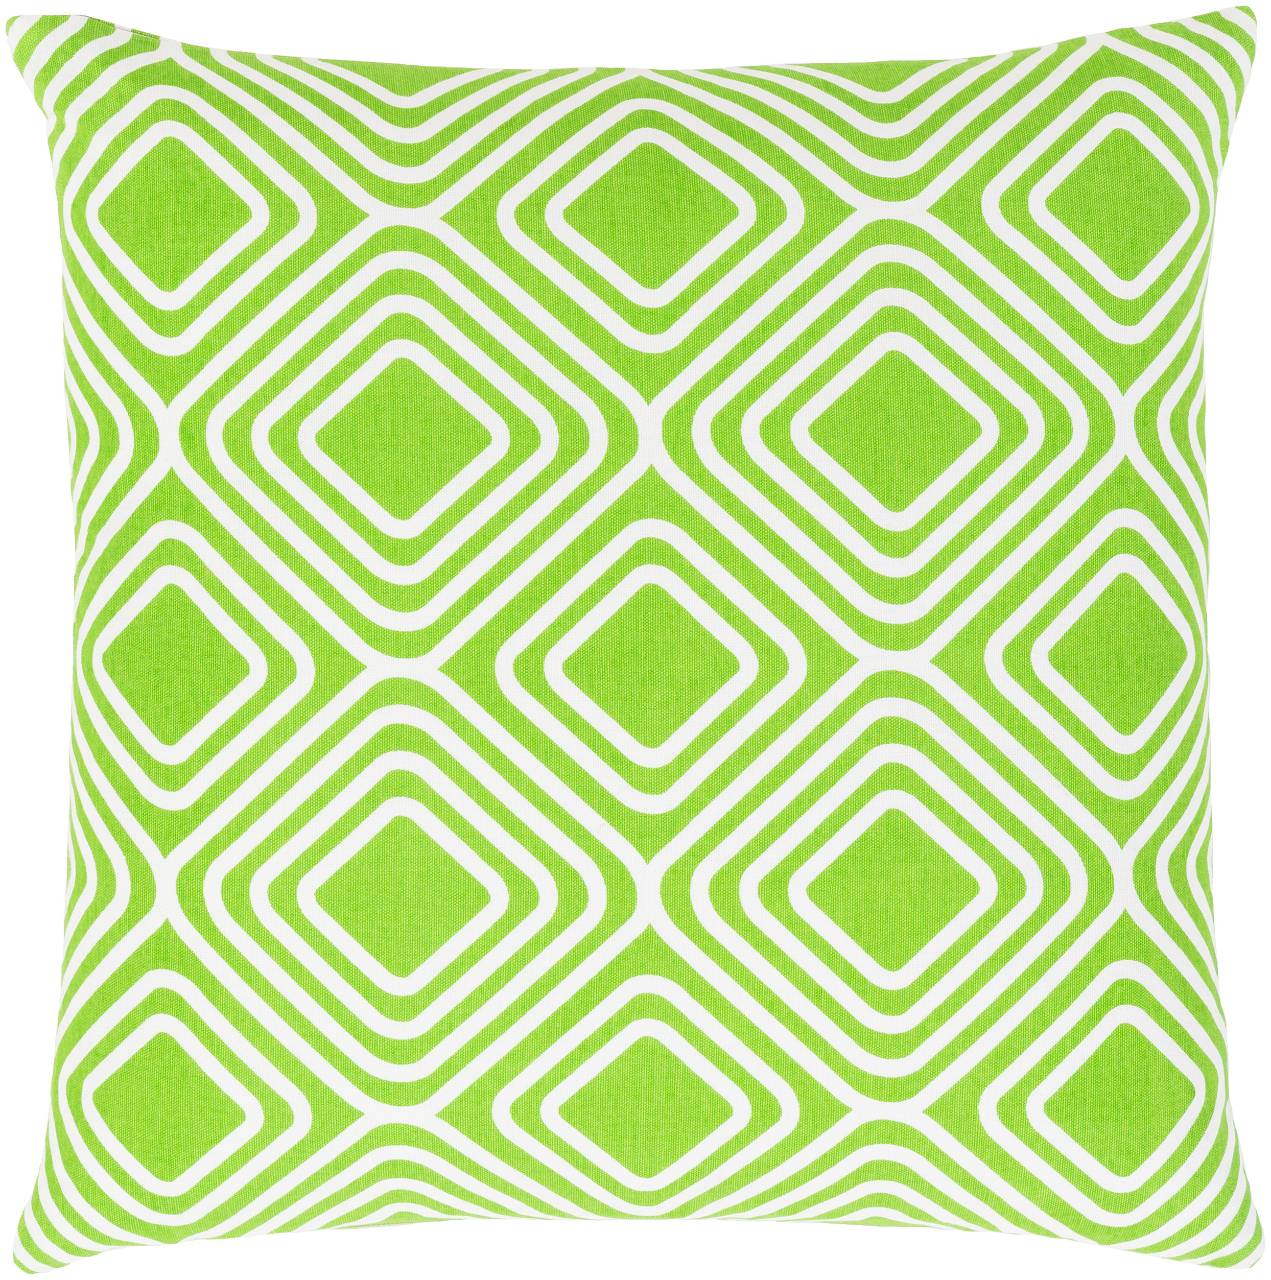 Zegveld Grass Green Pillow Cover